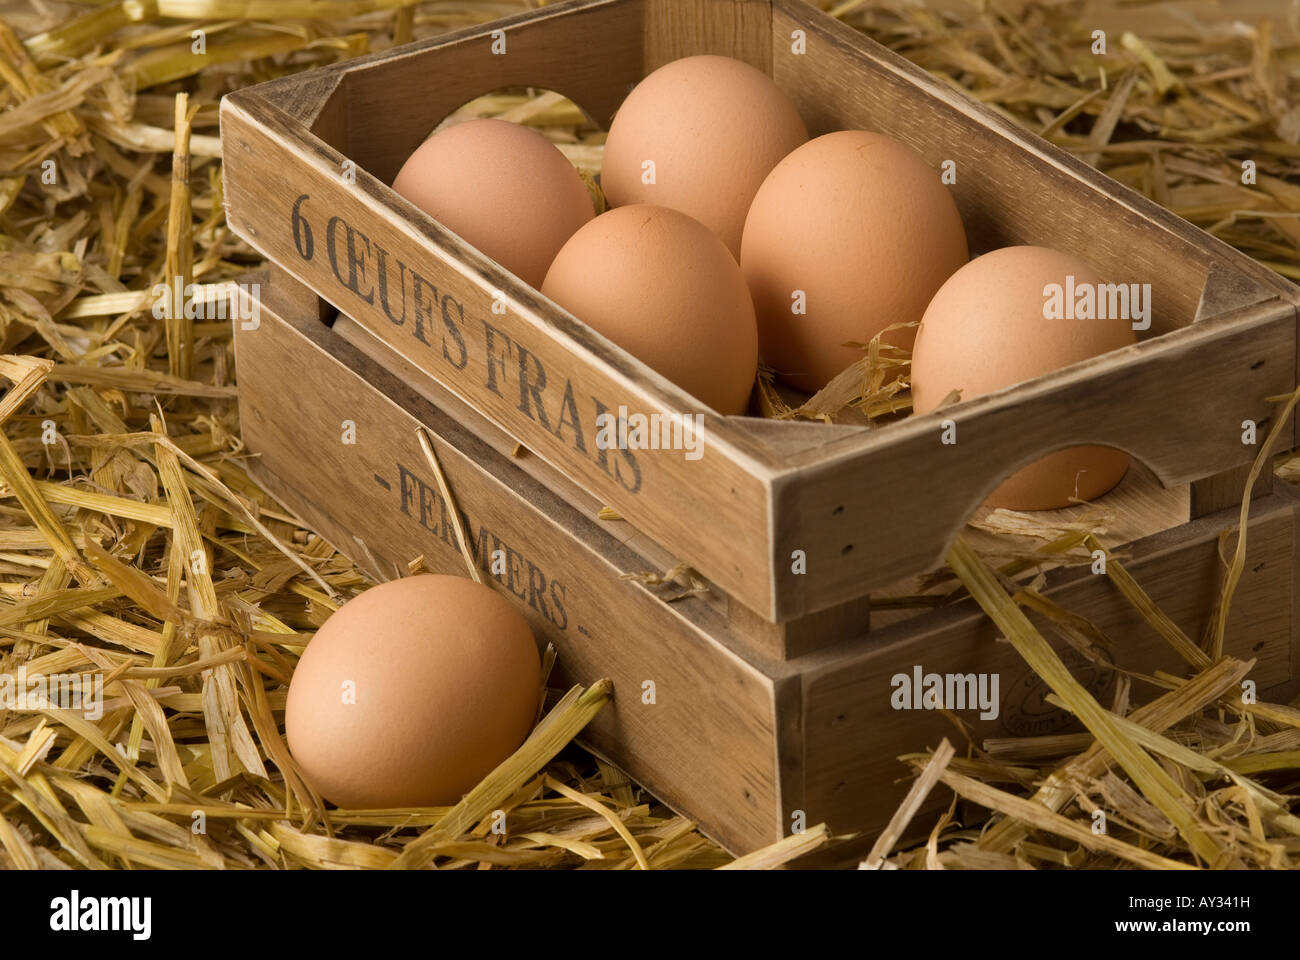 Caja de huevos de pollo orgánico recién sembradas Foto de stock